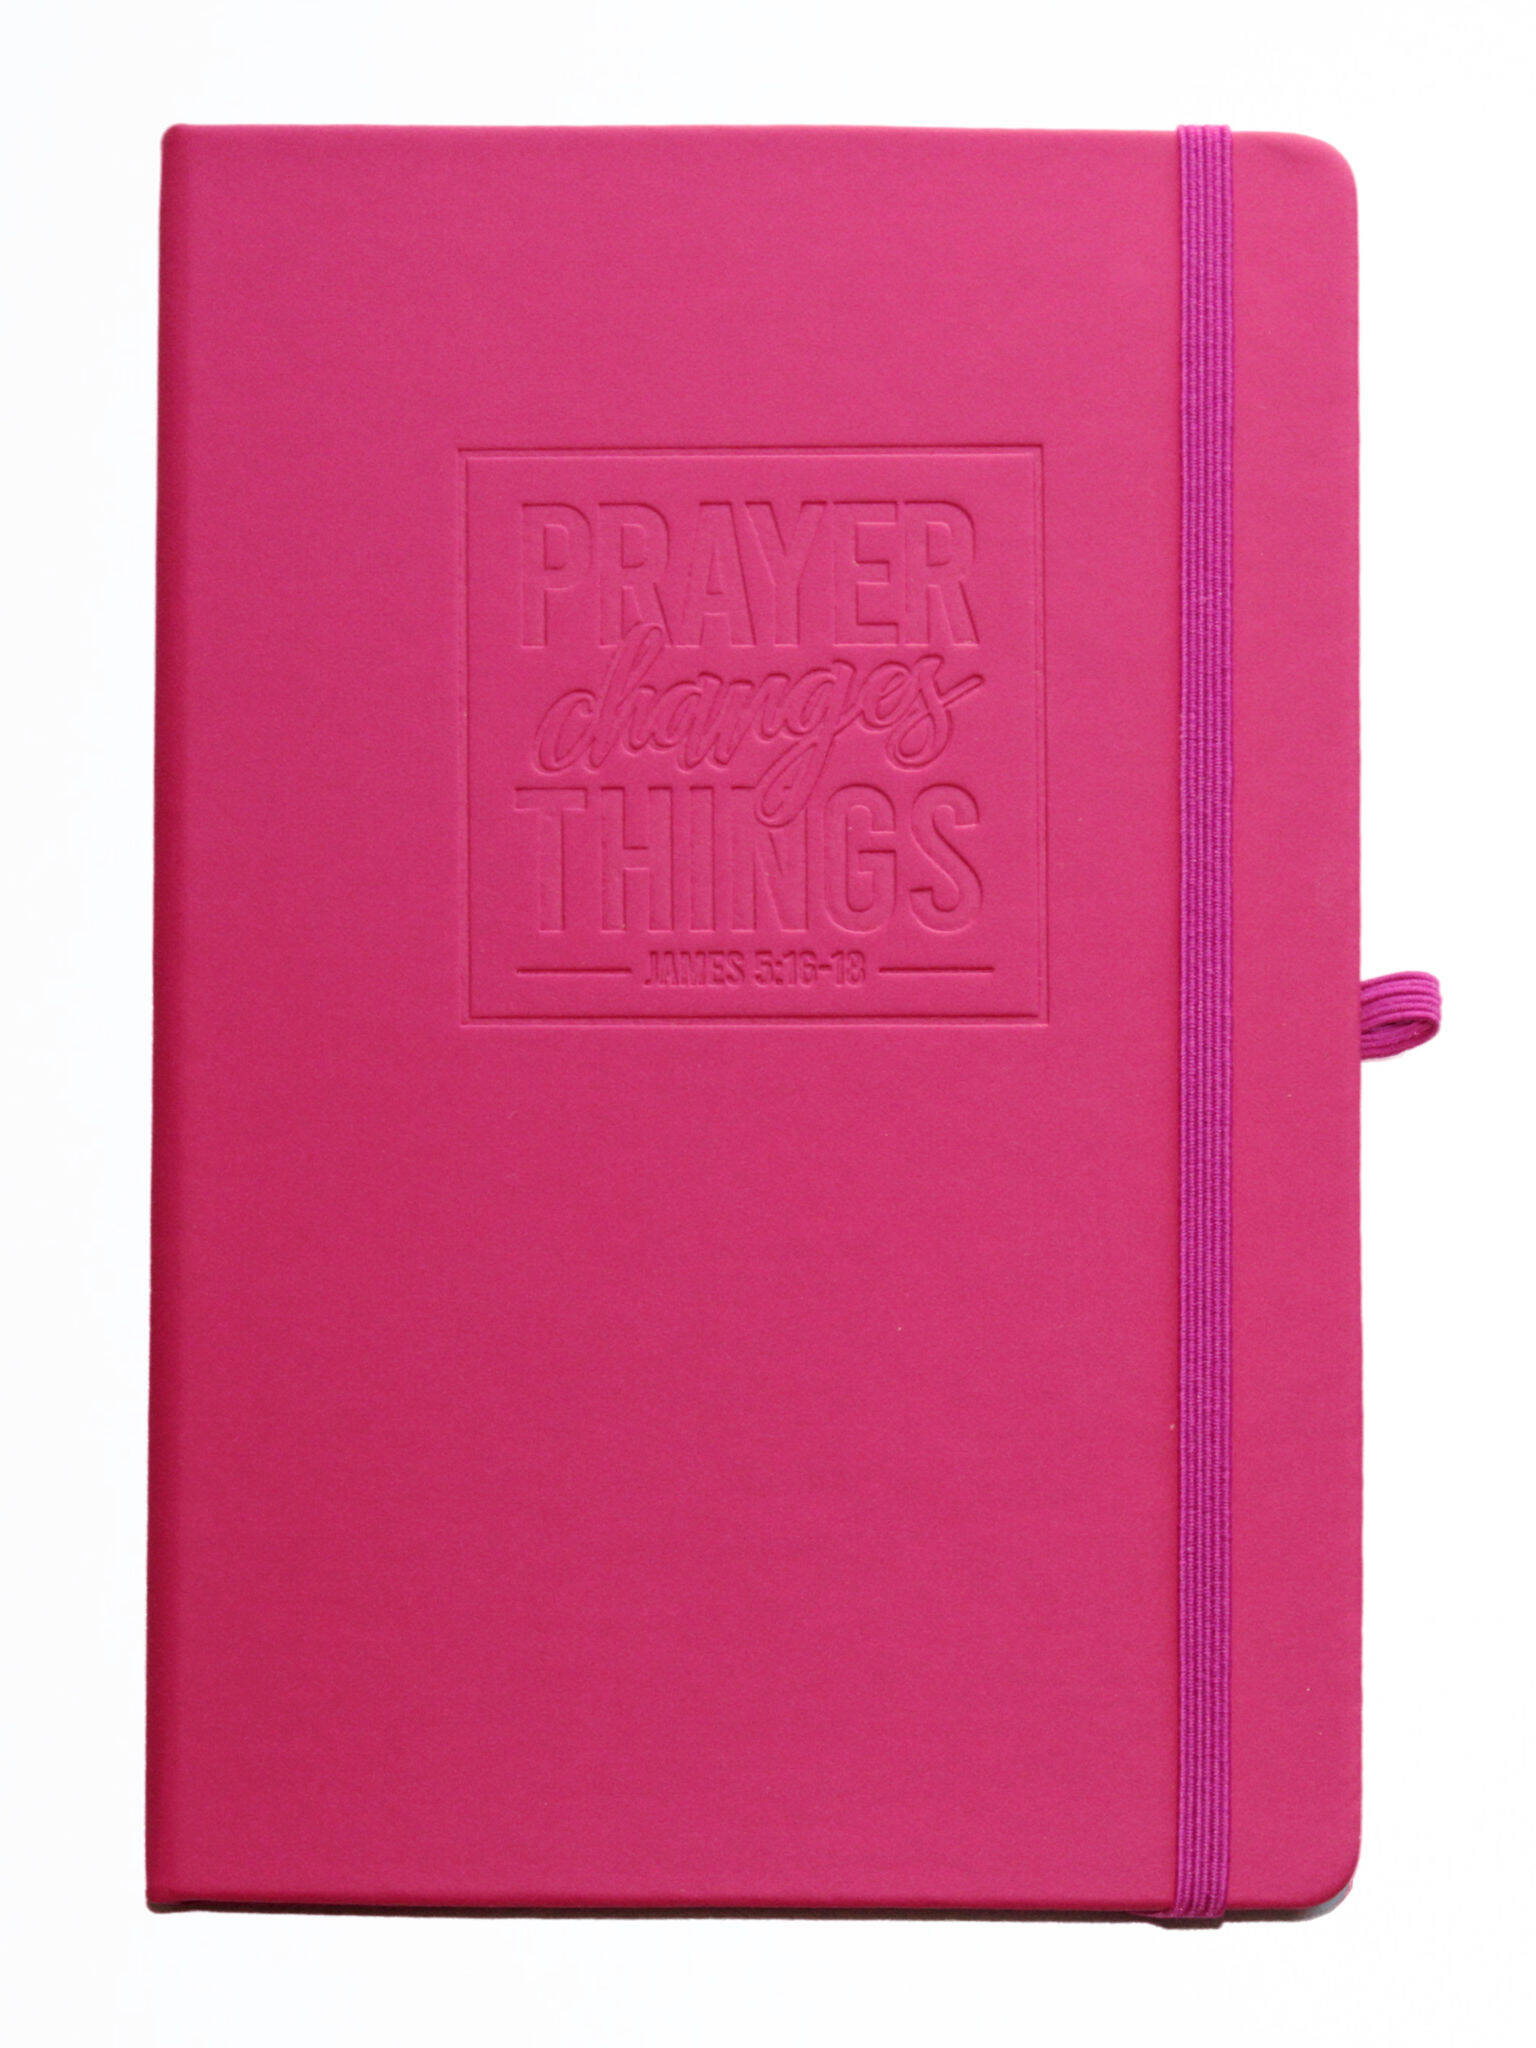 Pink journal saying 'Prayer Changes Things'